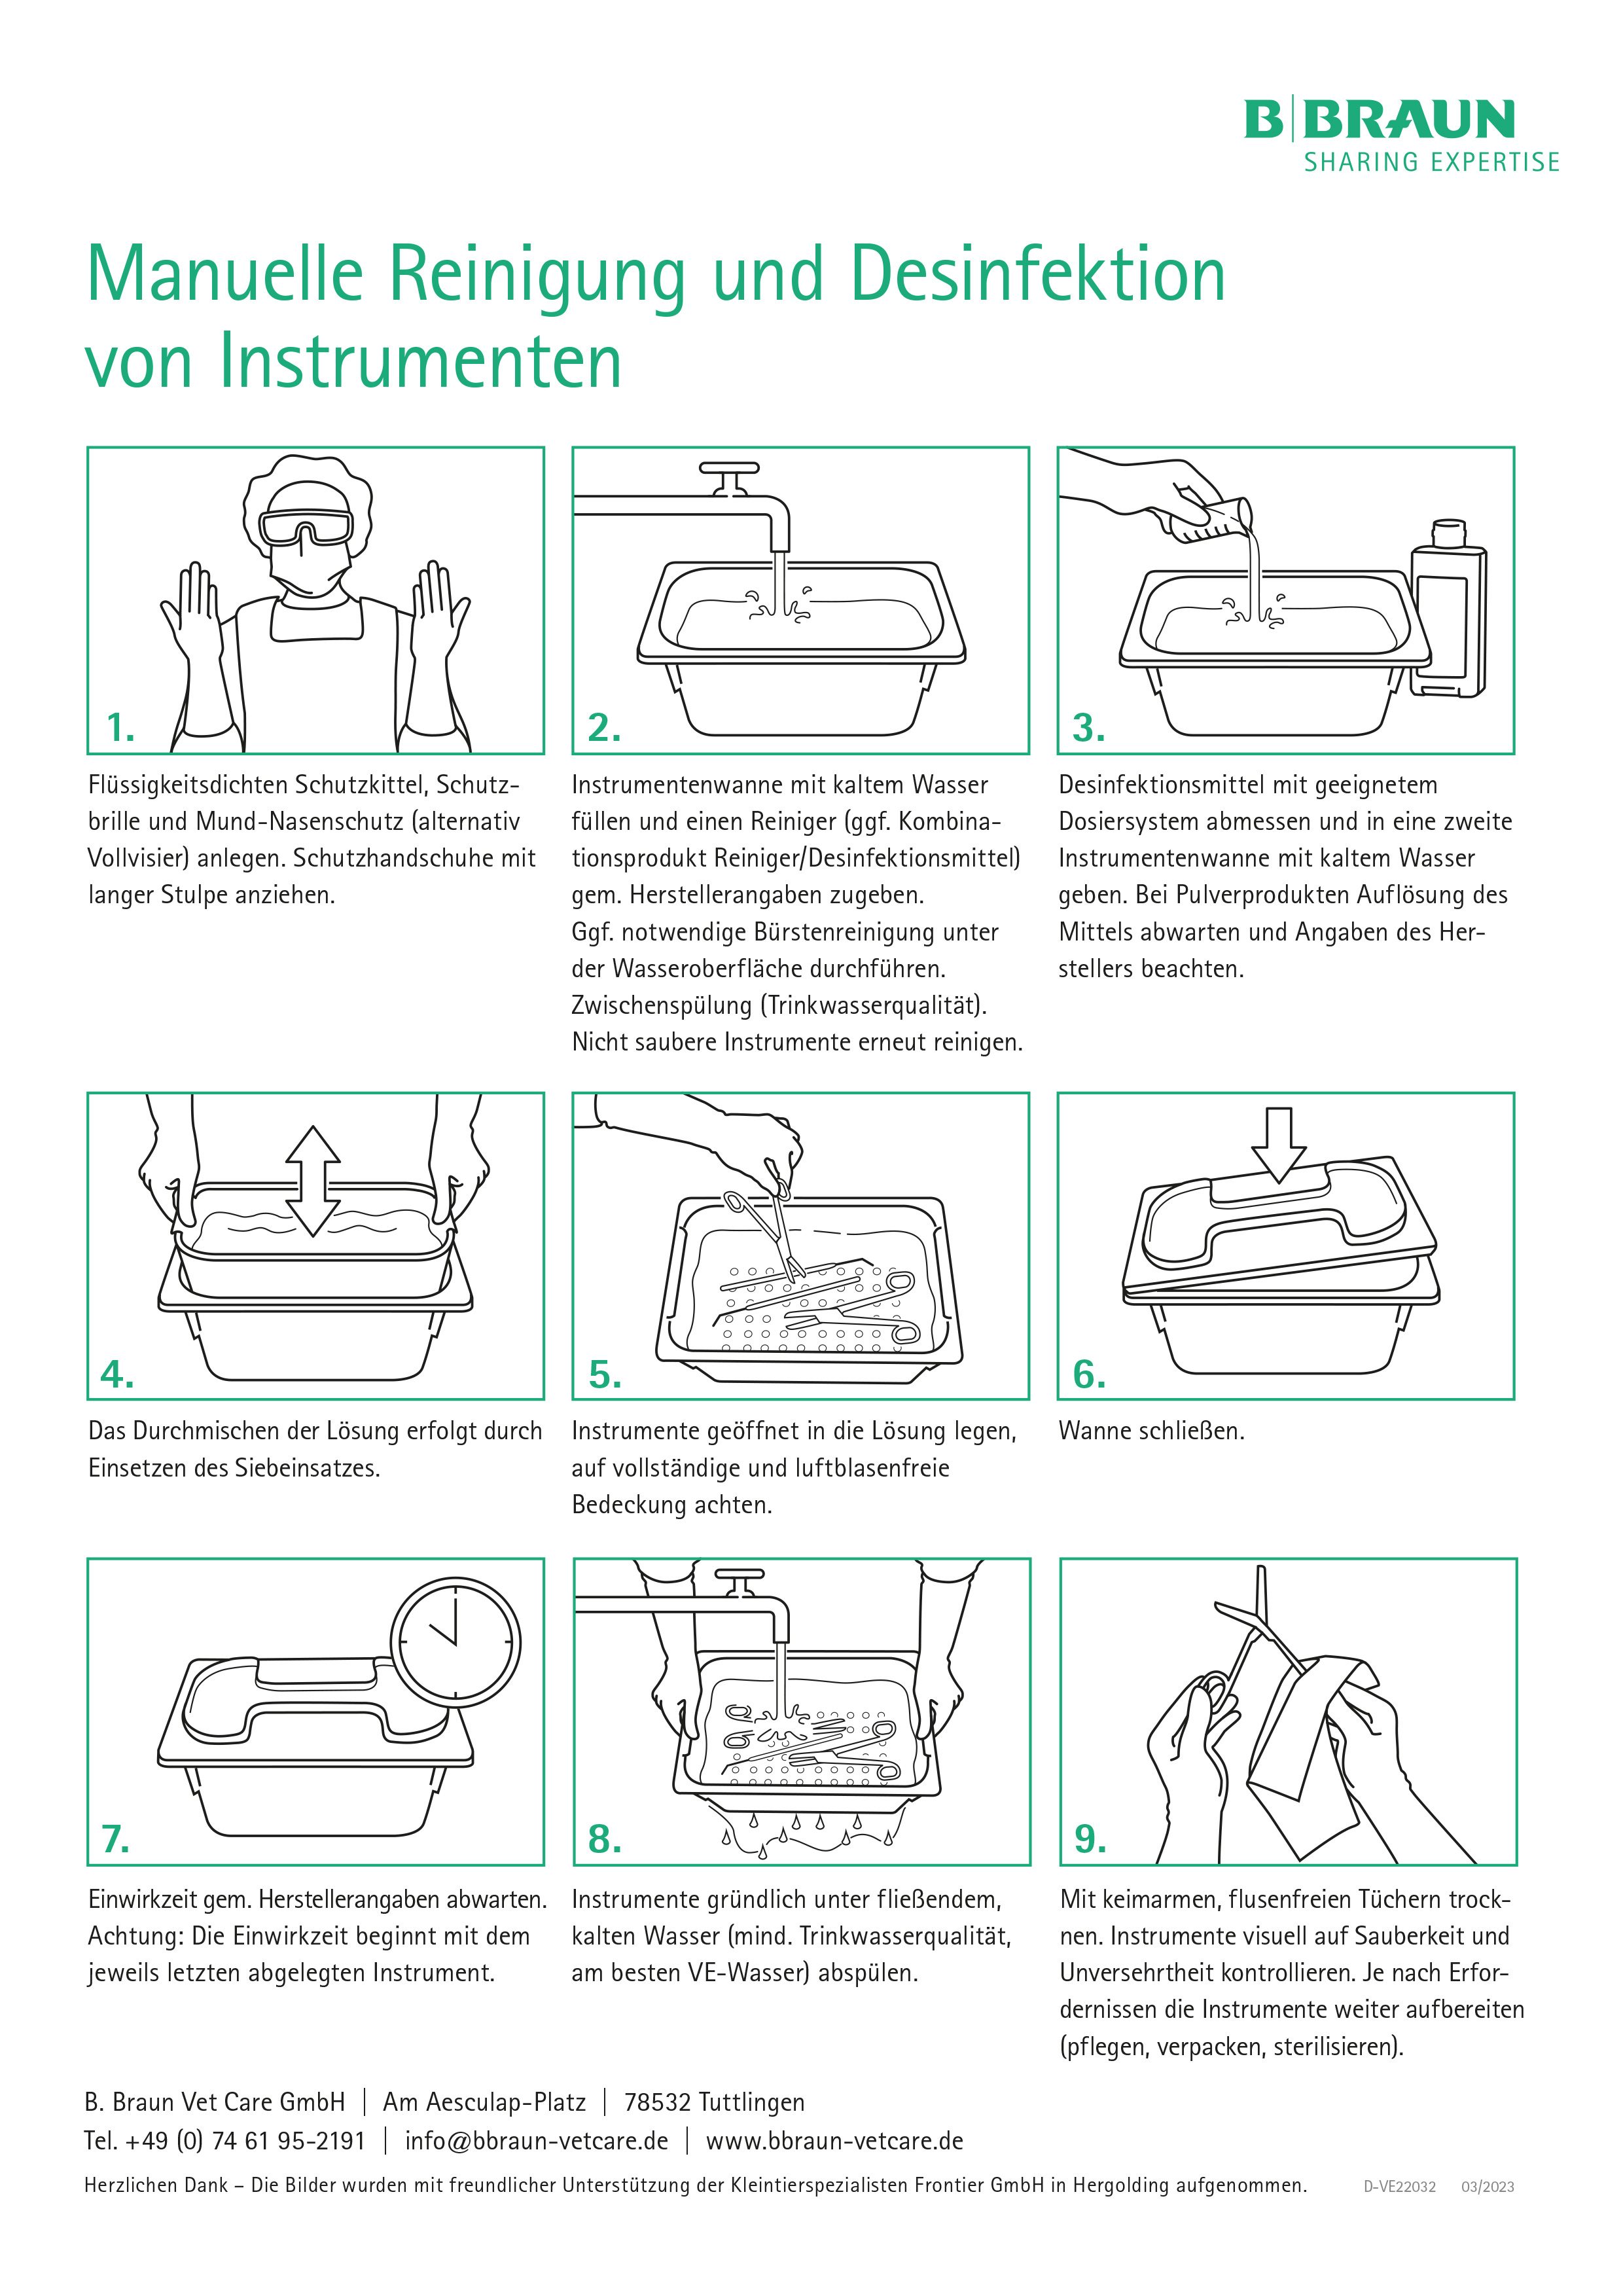 Step-by-Step Anleitung: Manuelle Reinigung und Desinfektion von Instrumenten